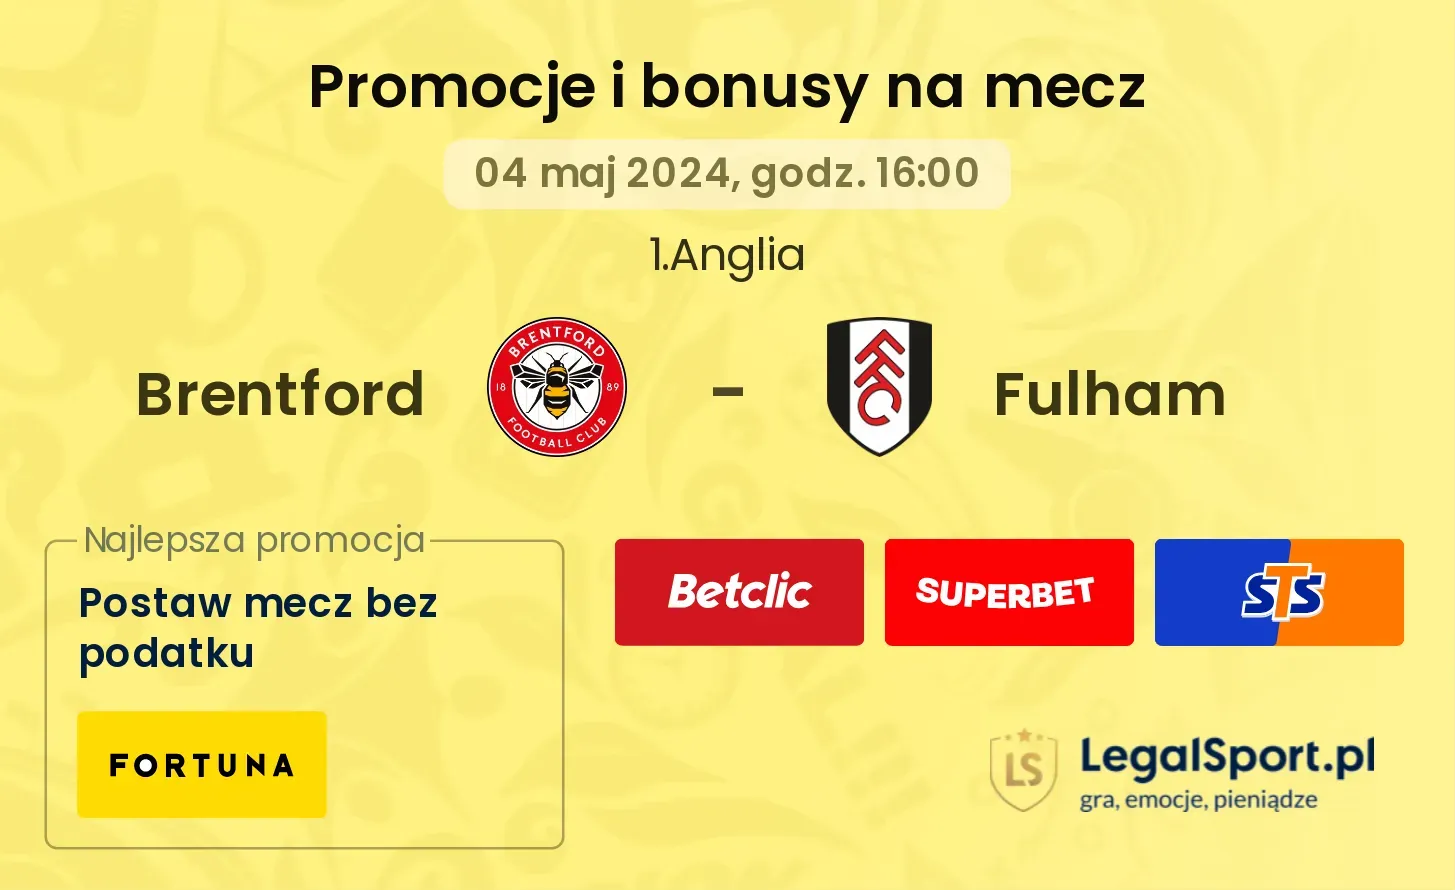 Brentford - Fulham promocje bonusy na mecz